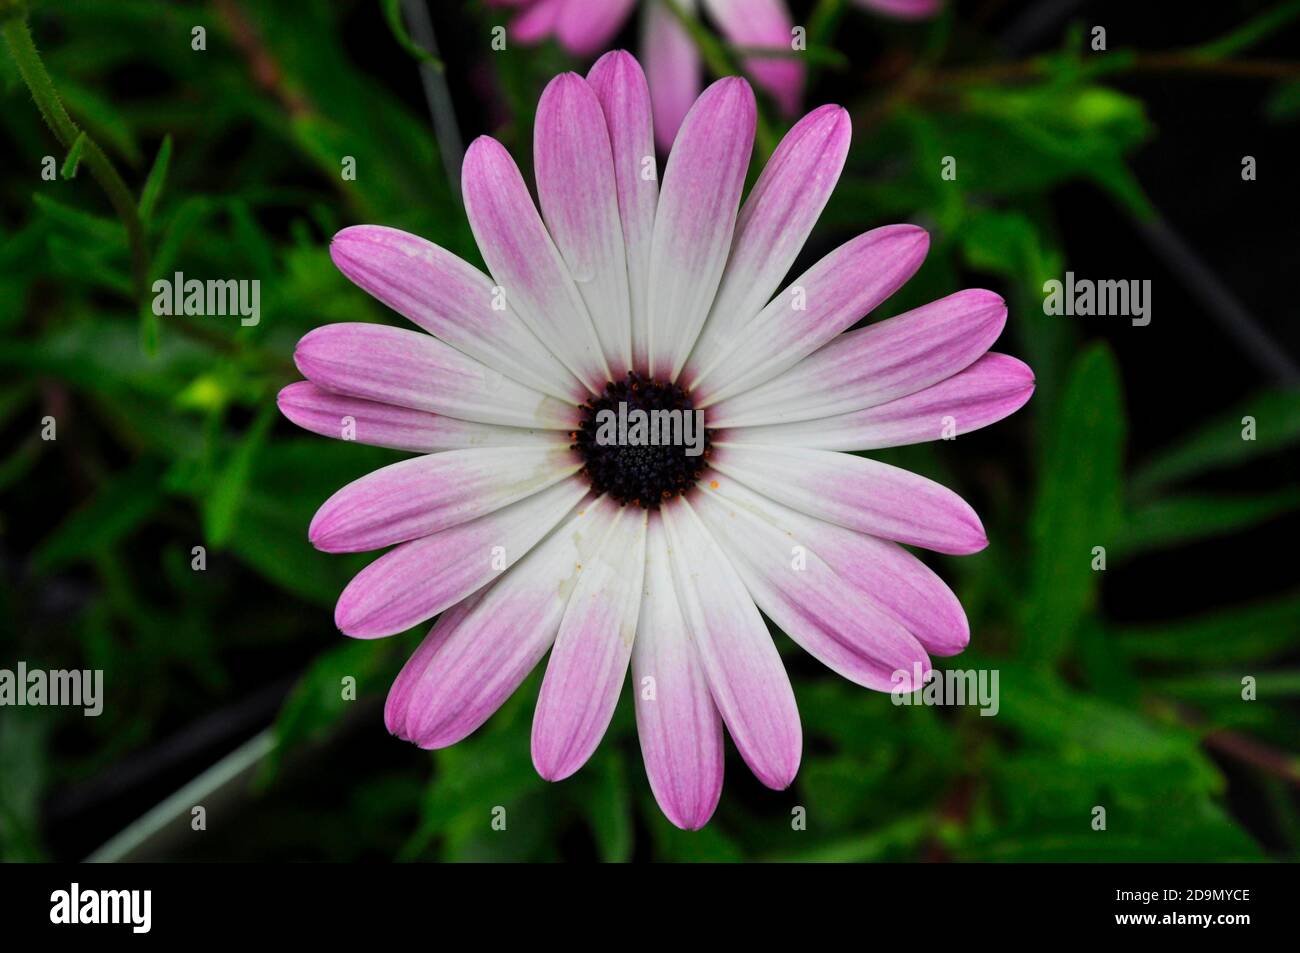 Fleur, gros plan d'un membre de la famille compositae. Pétales blancs et magenta avec un centre de couleur noire.dans un jardin de Wiltshire.UK Banque D'Images